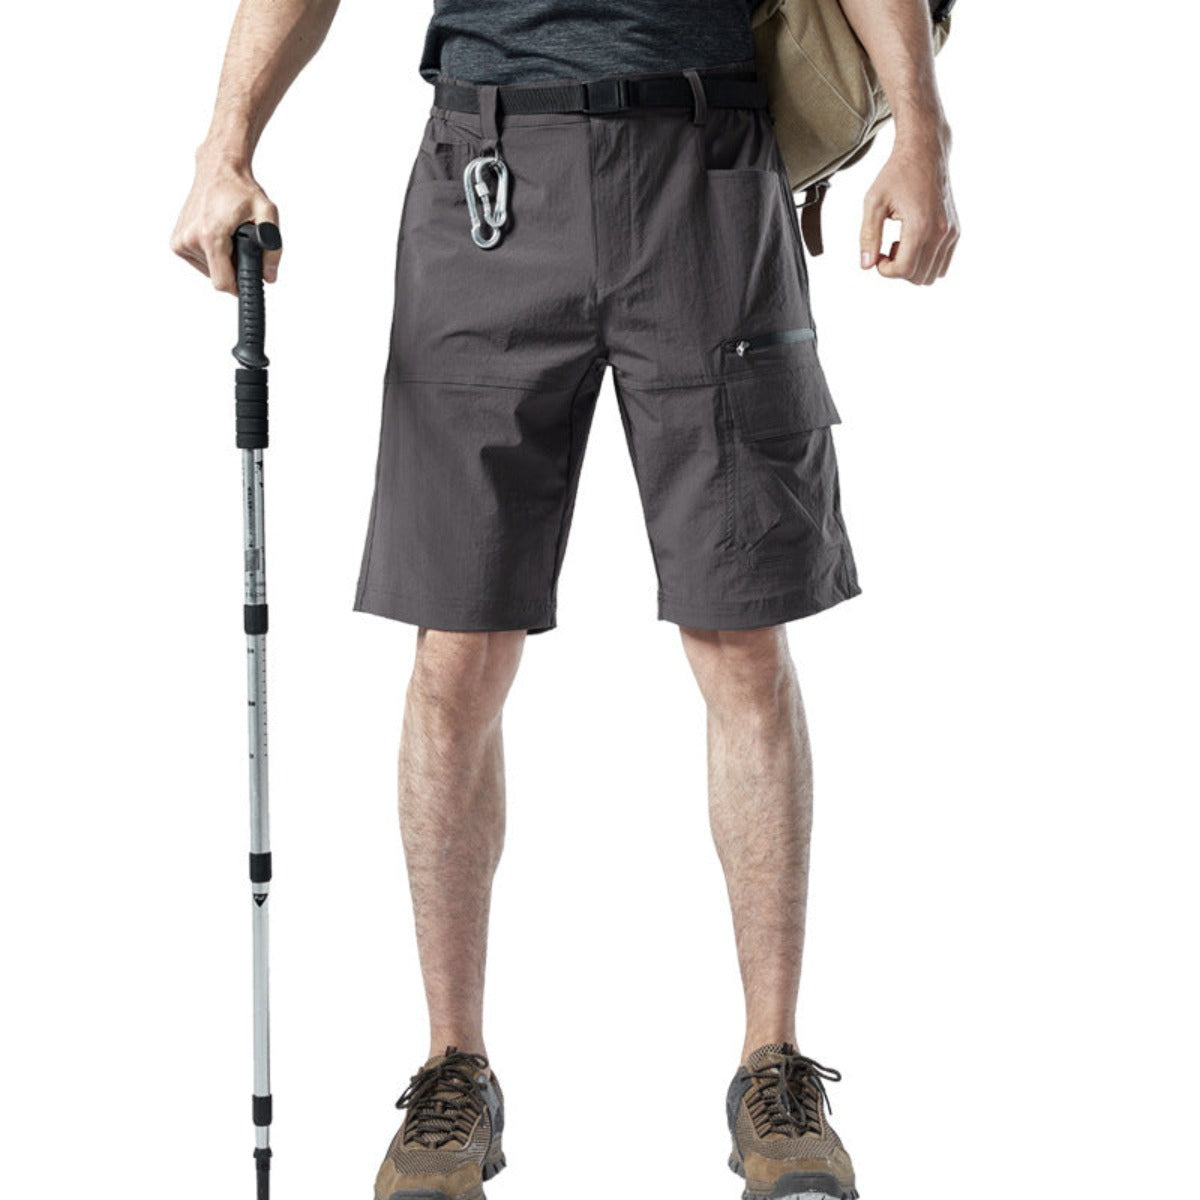 Mens Multi-Pocket Cargo Shorts Summer Outdoor Hiking Multi Pocket Quick Drying Shorts - - Men's Shorts - Carvan Mart